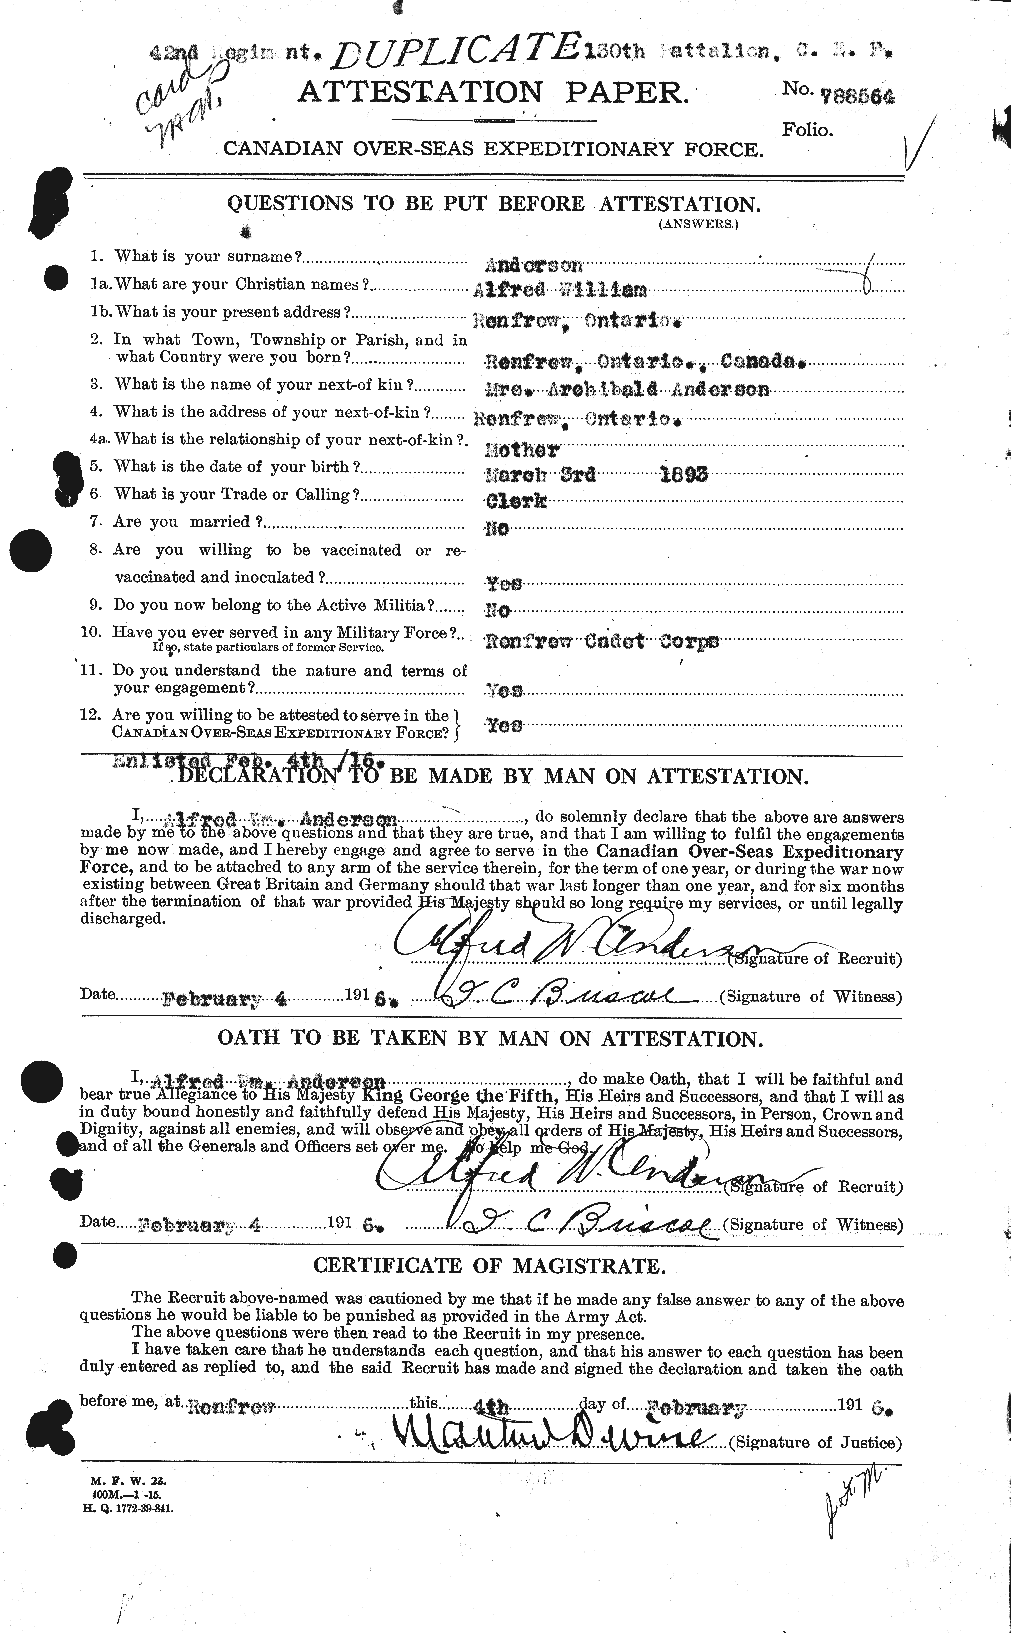 Dossiers du Personnel de la Première Guerre mondiale - CEC 209450a